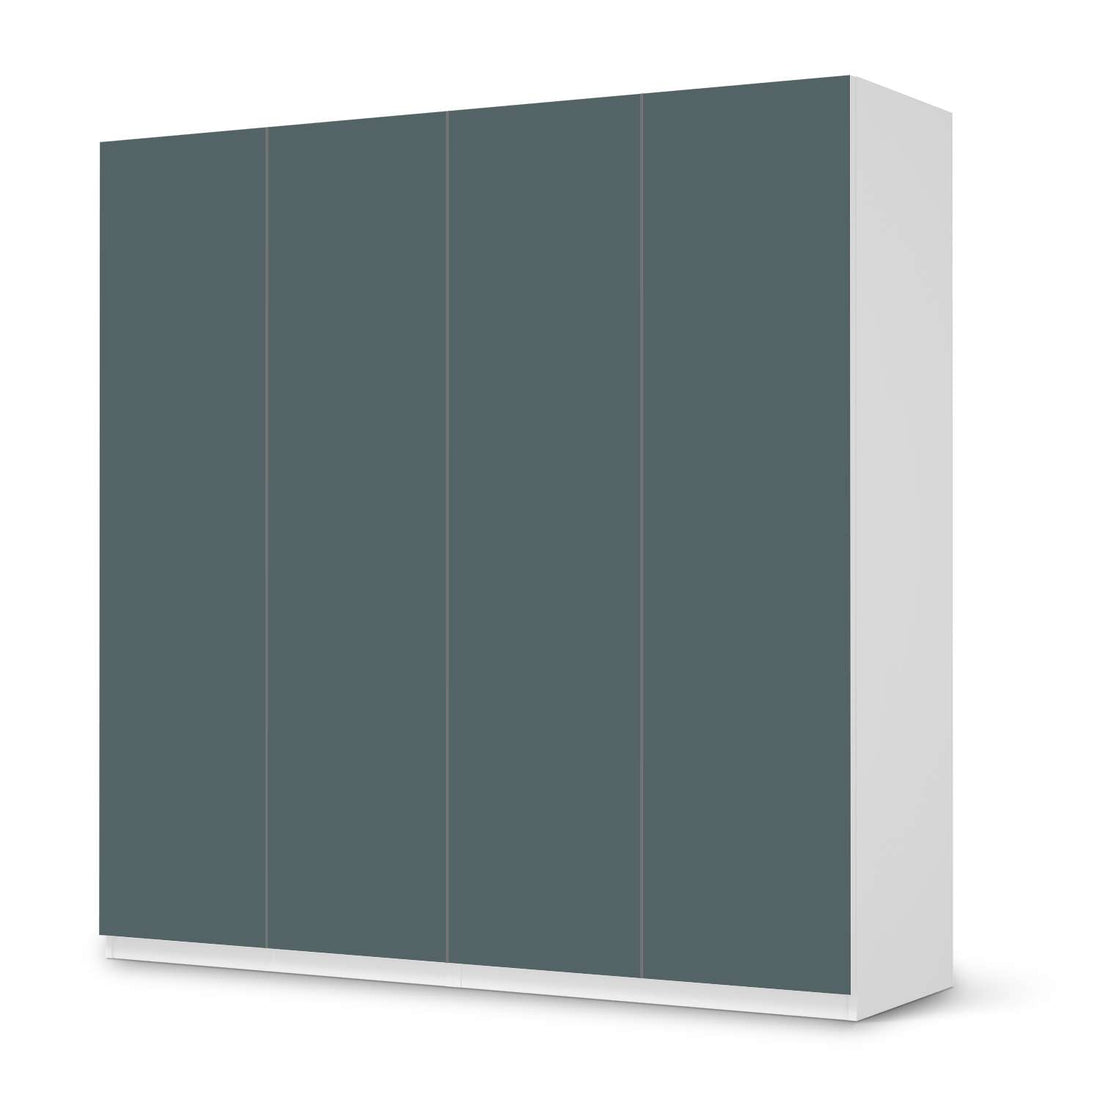 Klebefolie für Schränke Blaugrau Light - IKEA Pax Schrank 201 cm Höhe - 4 Türen - weiss